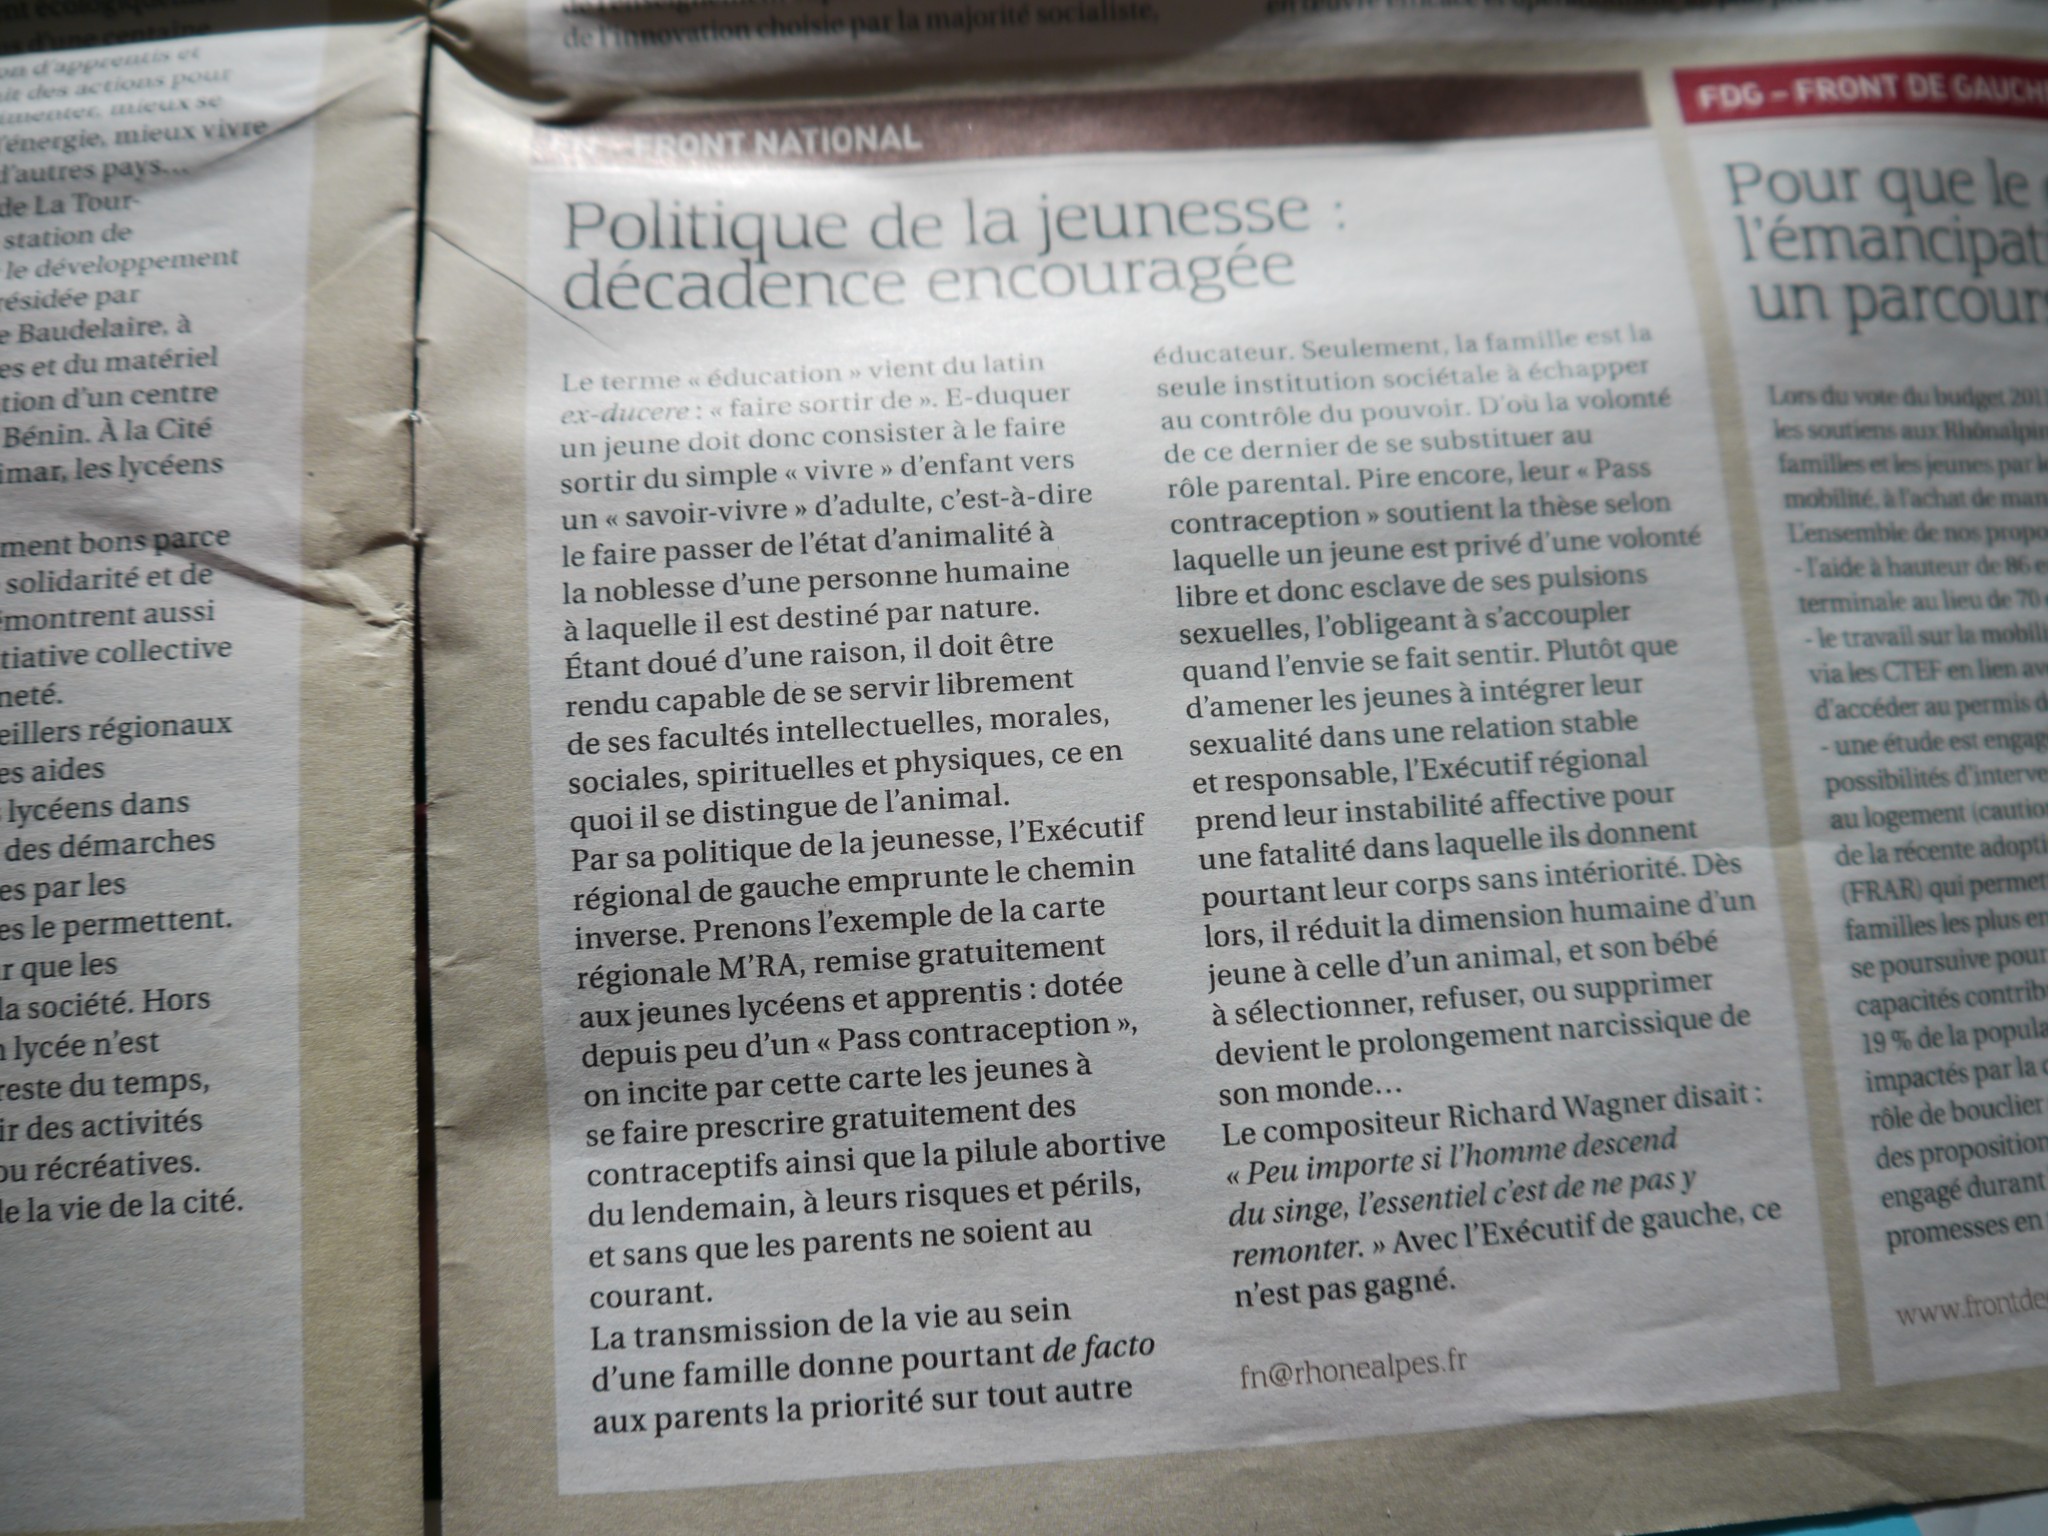 Tribune du groupe Front National dans le journal "Rhône-Alpes" de septembre 2012.